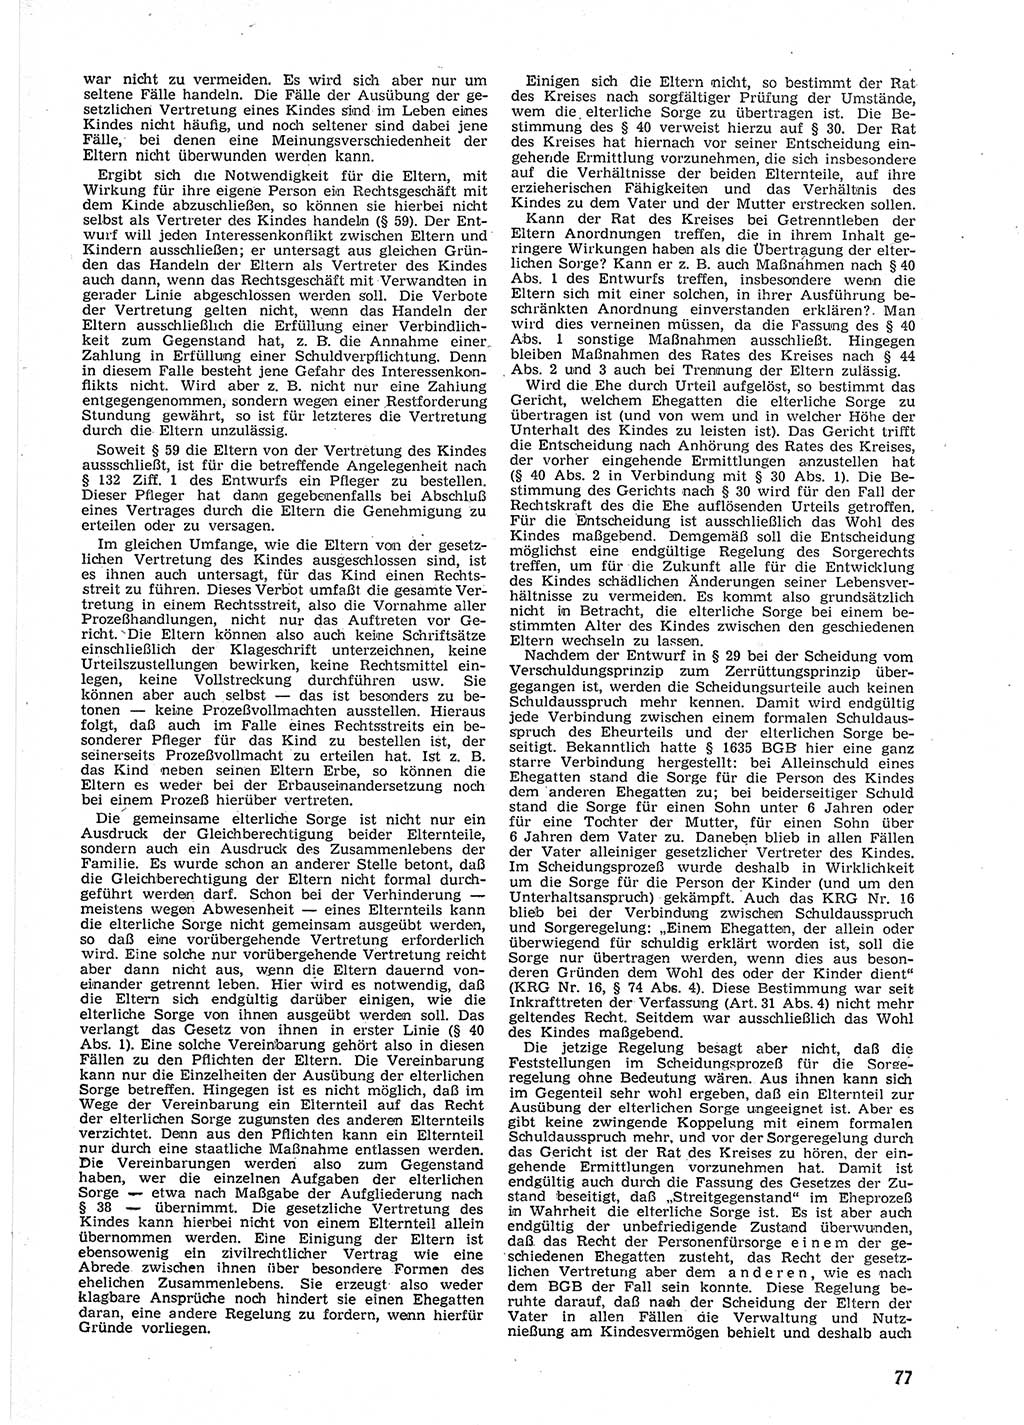 Neue Justiz (NJ), Zeitschrift für Recht und Rechtswissenschaft [Deutsche Demokratische Republik (DDR)], 9. Jahrgang 1955, Seite 77 (NJ DDR 1955, S. 77)